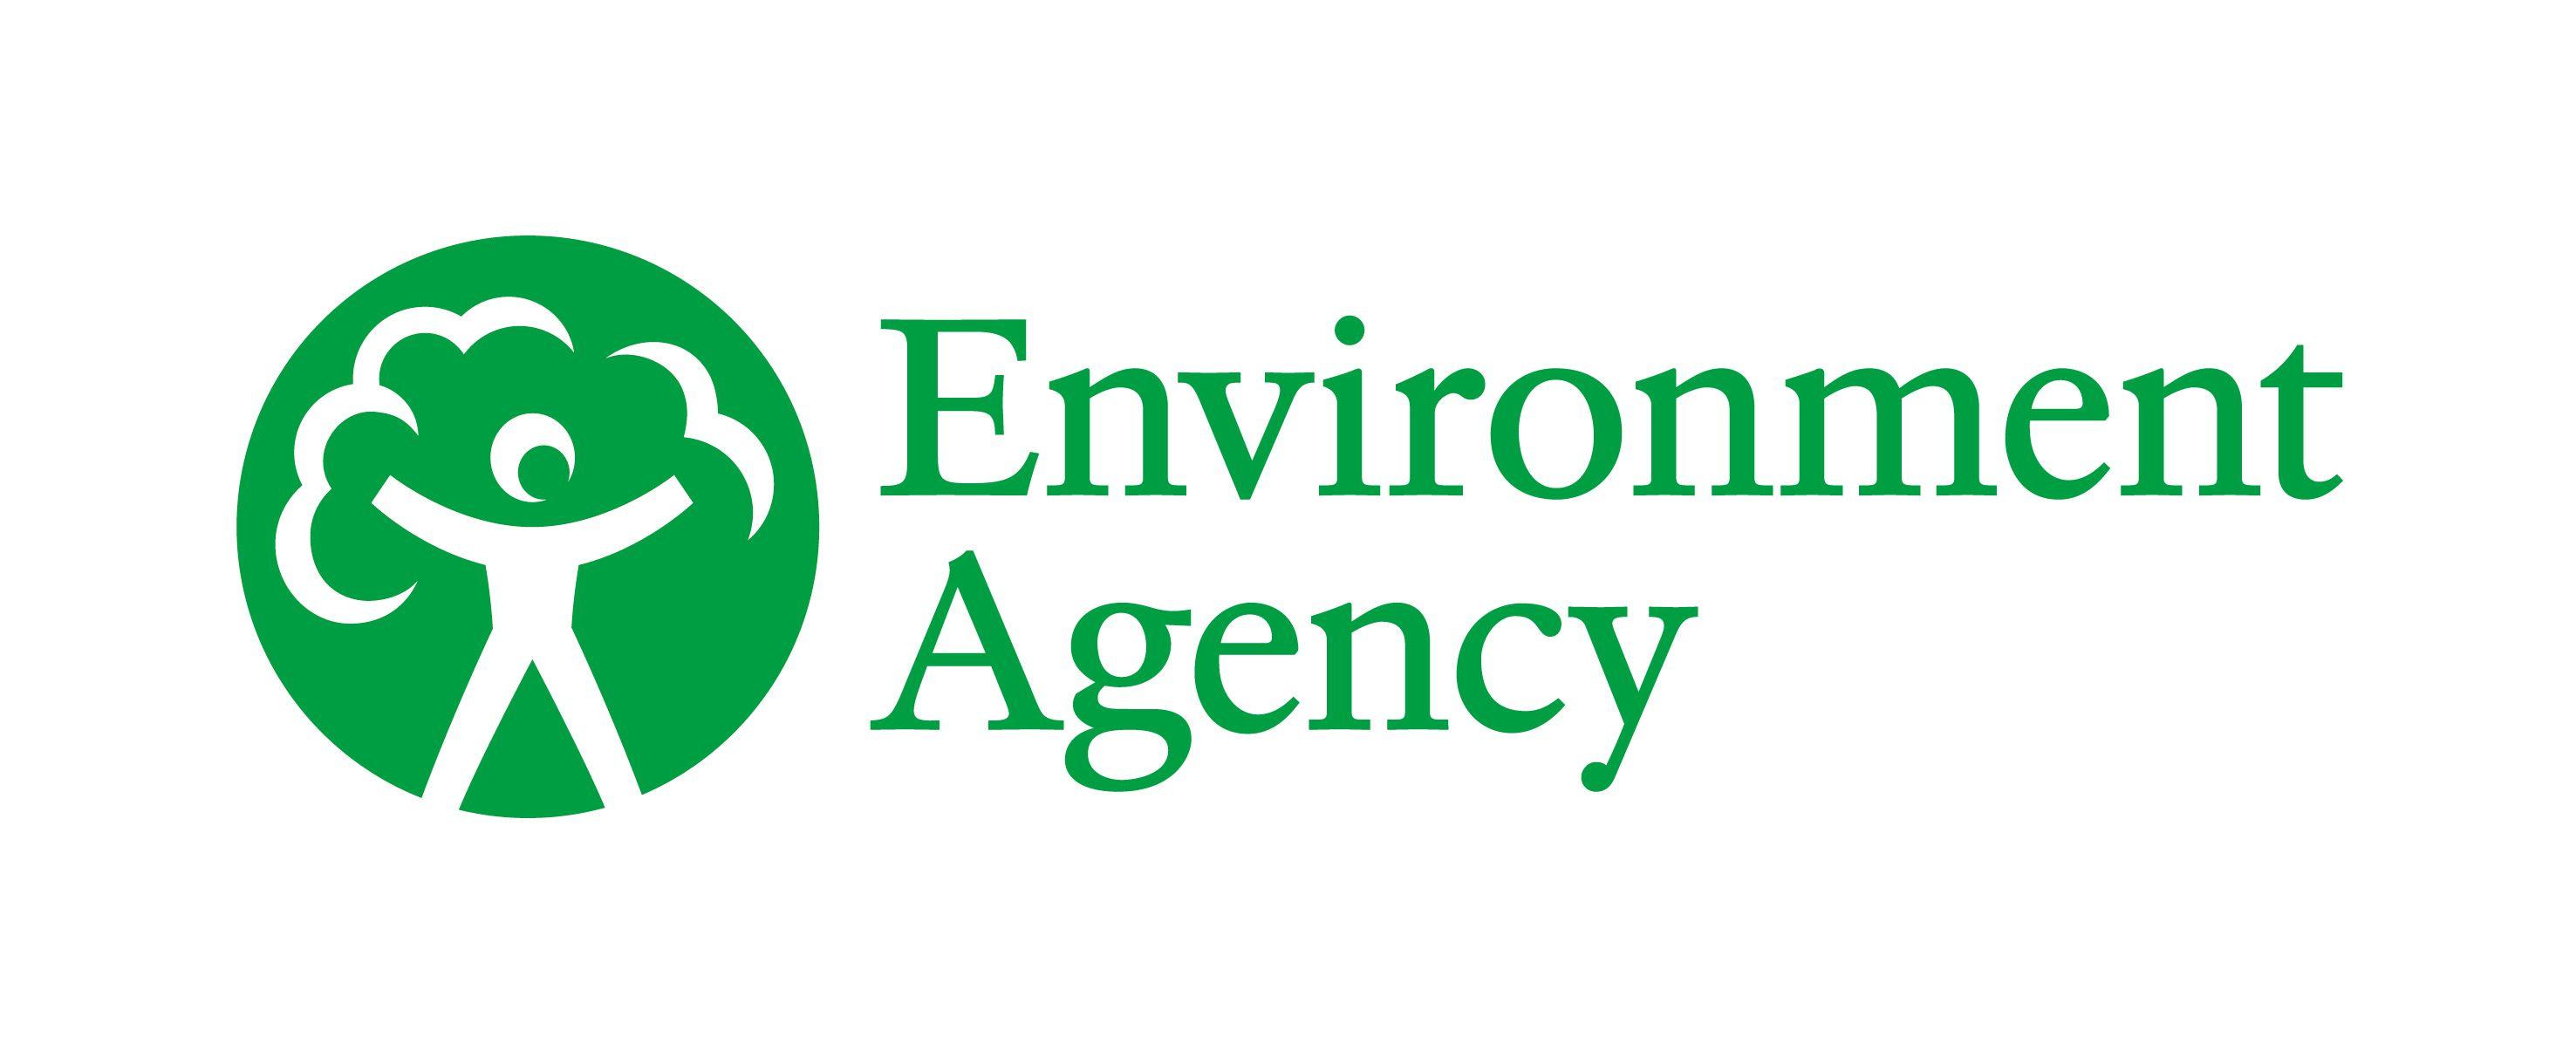 Governmental Organization Logo - Environment Agency - GOV.UK